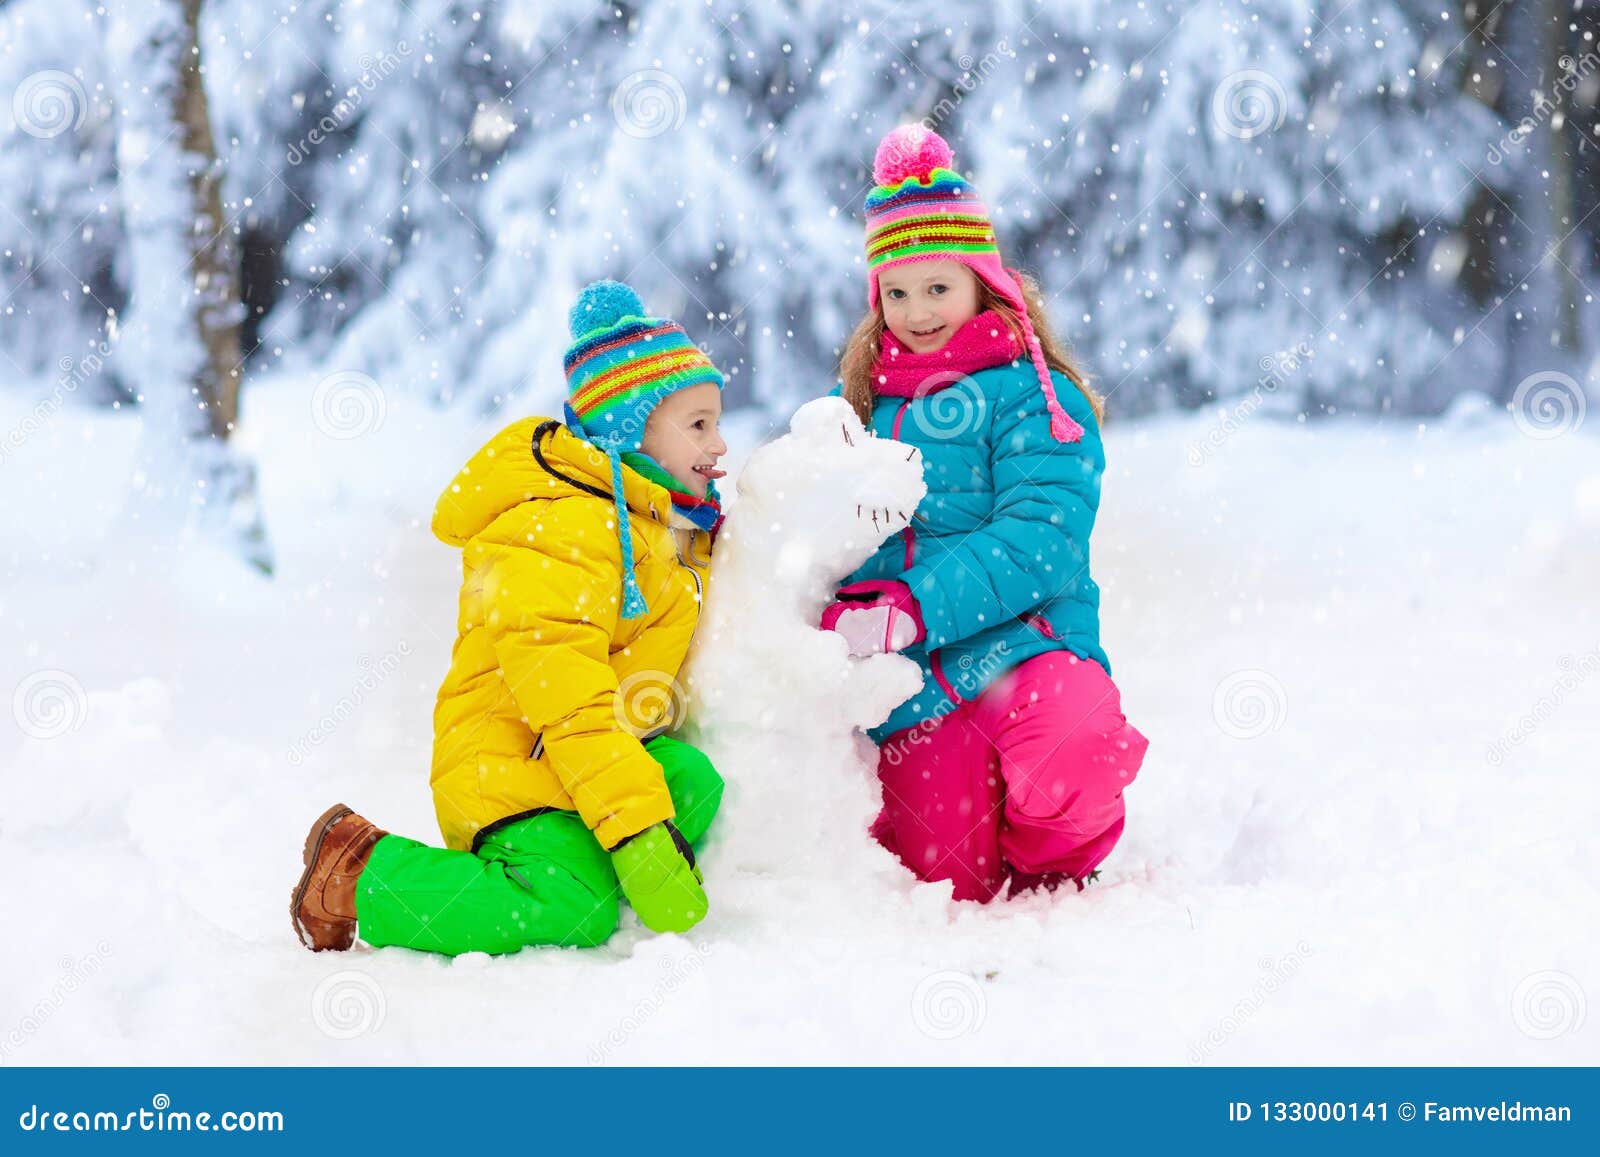 kids making winter snowman. children play in snow